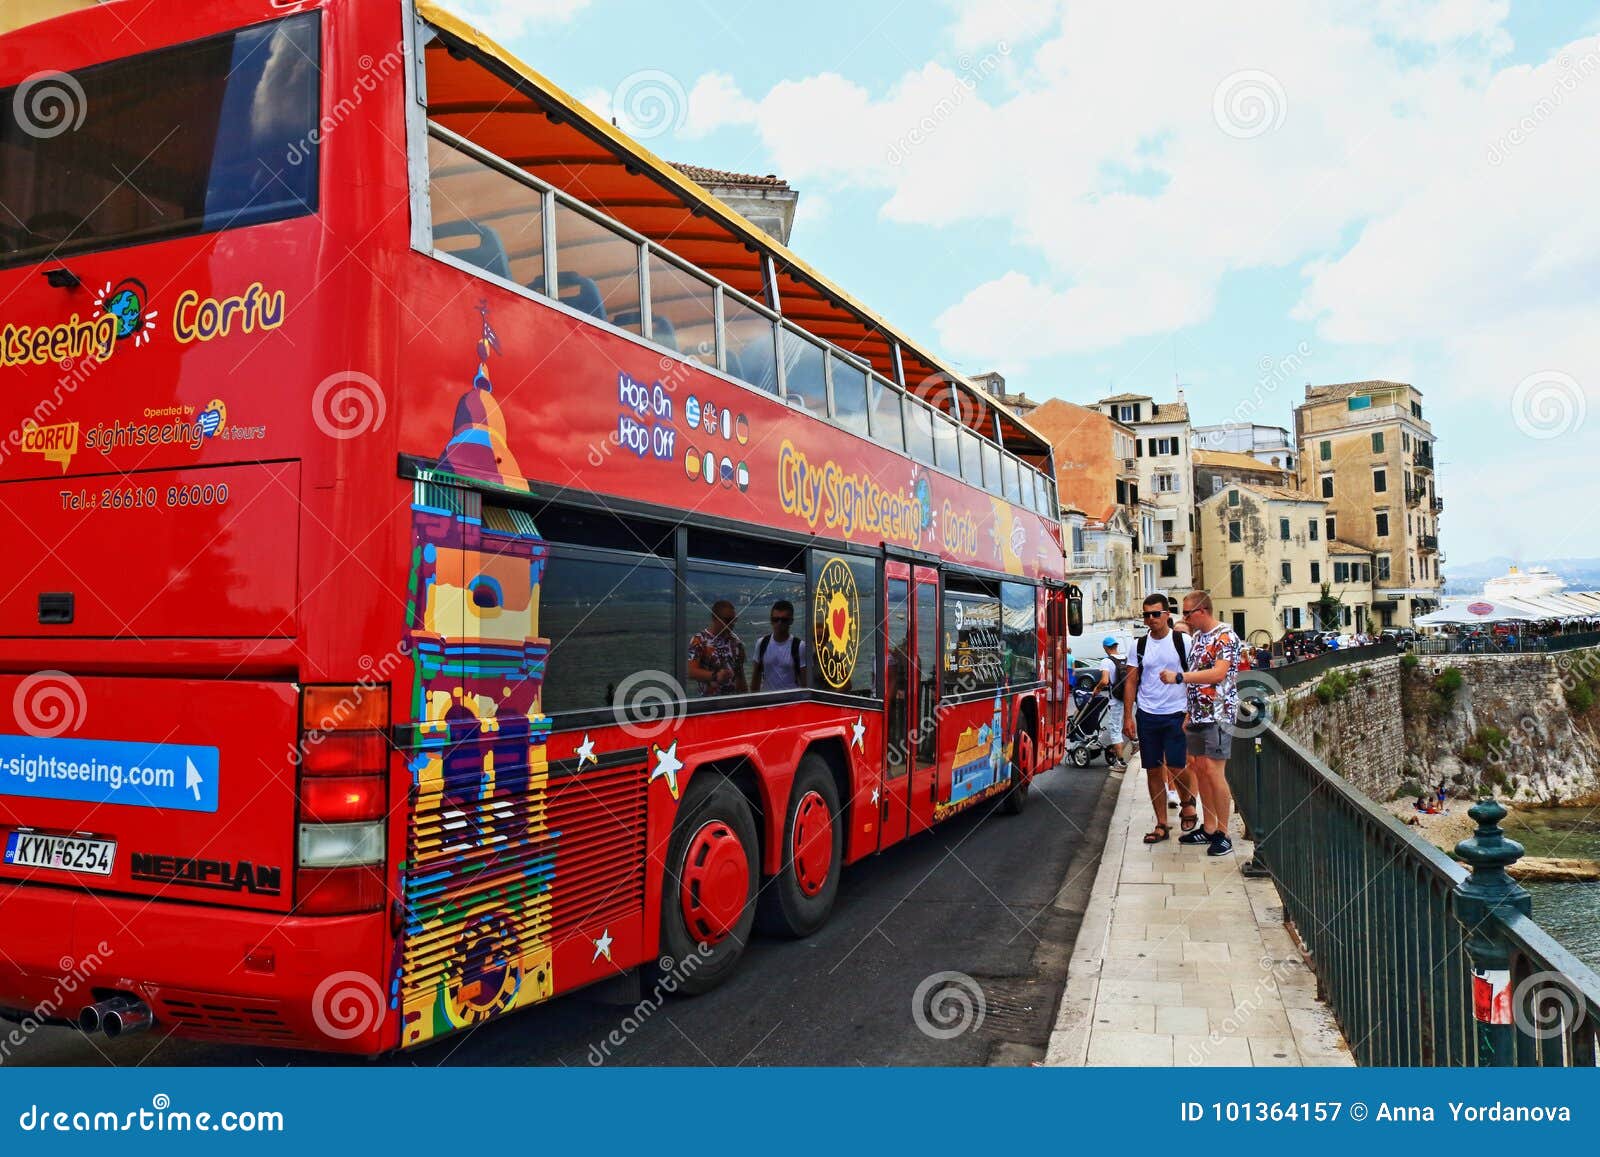 corfu city tour bus